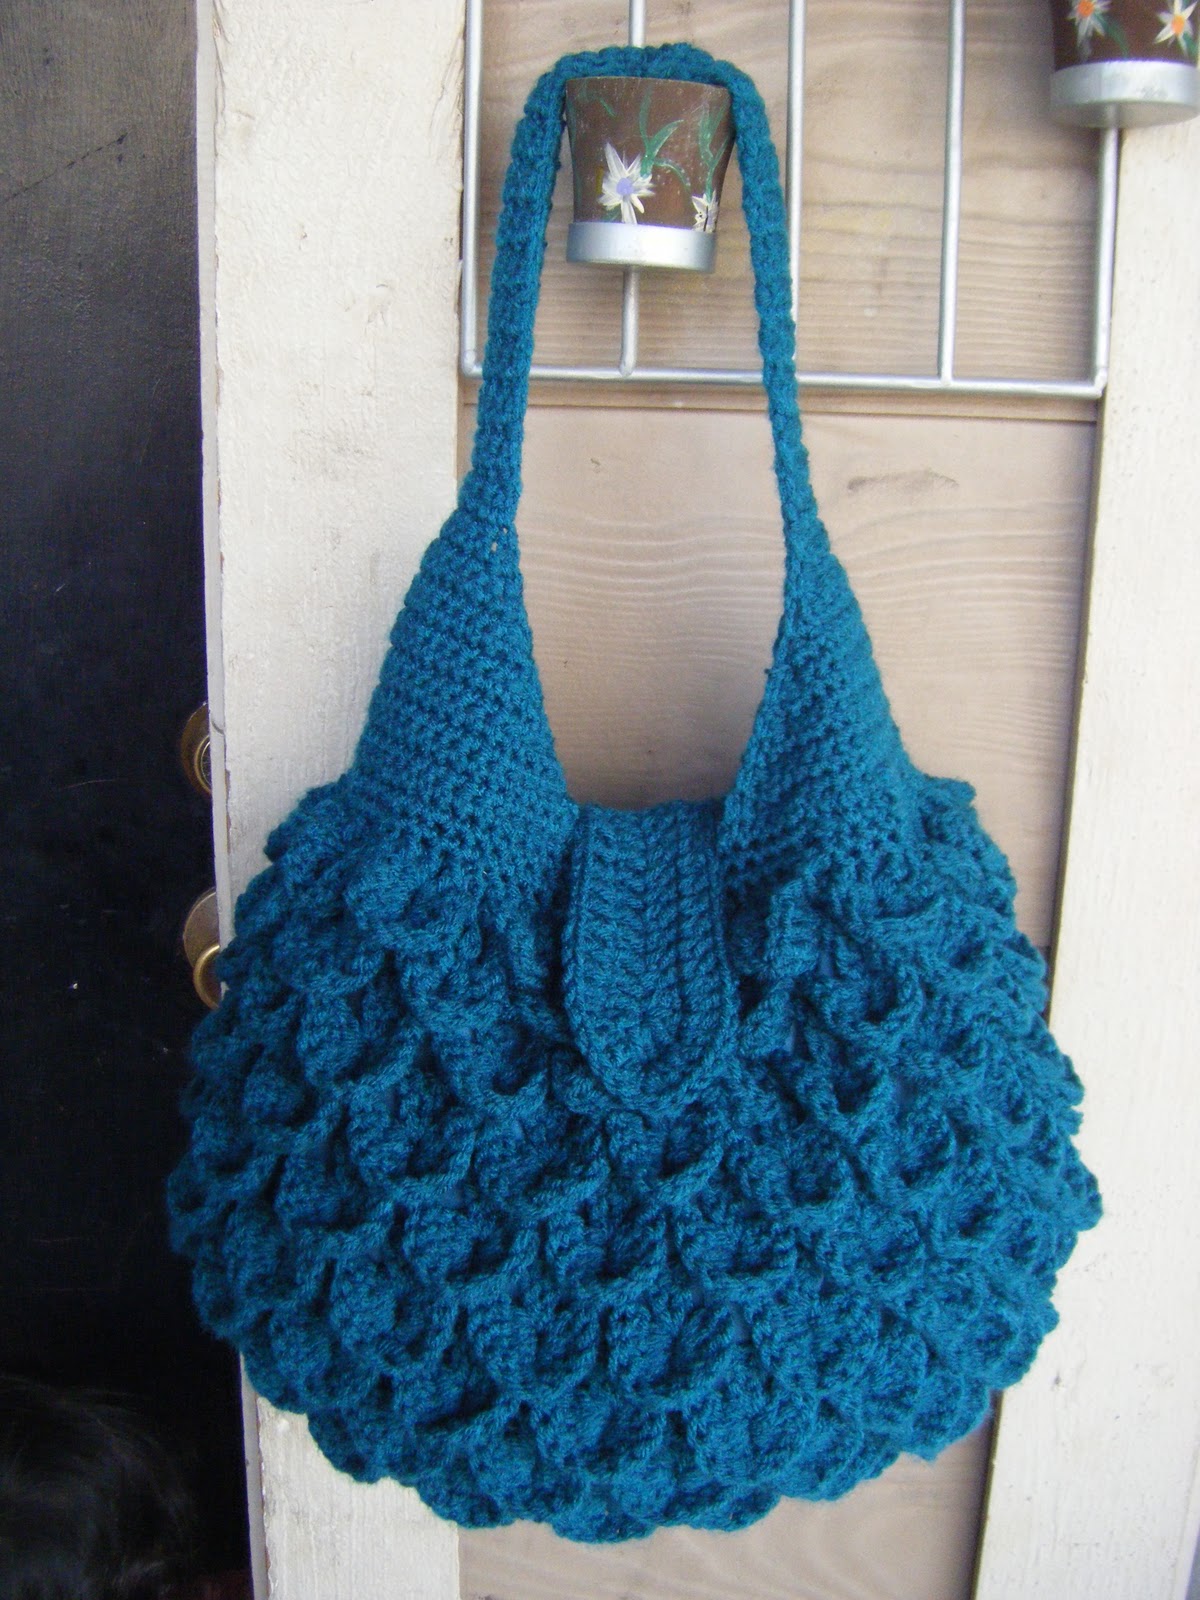 FREE CROCHET BAG PATTERNS | Crochet Tutorials